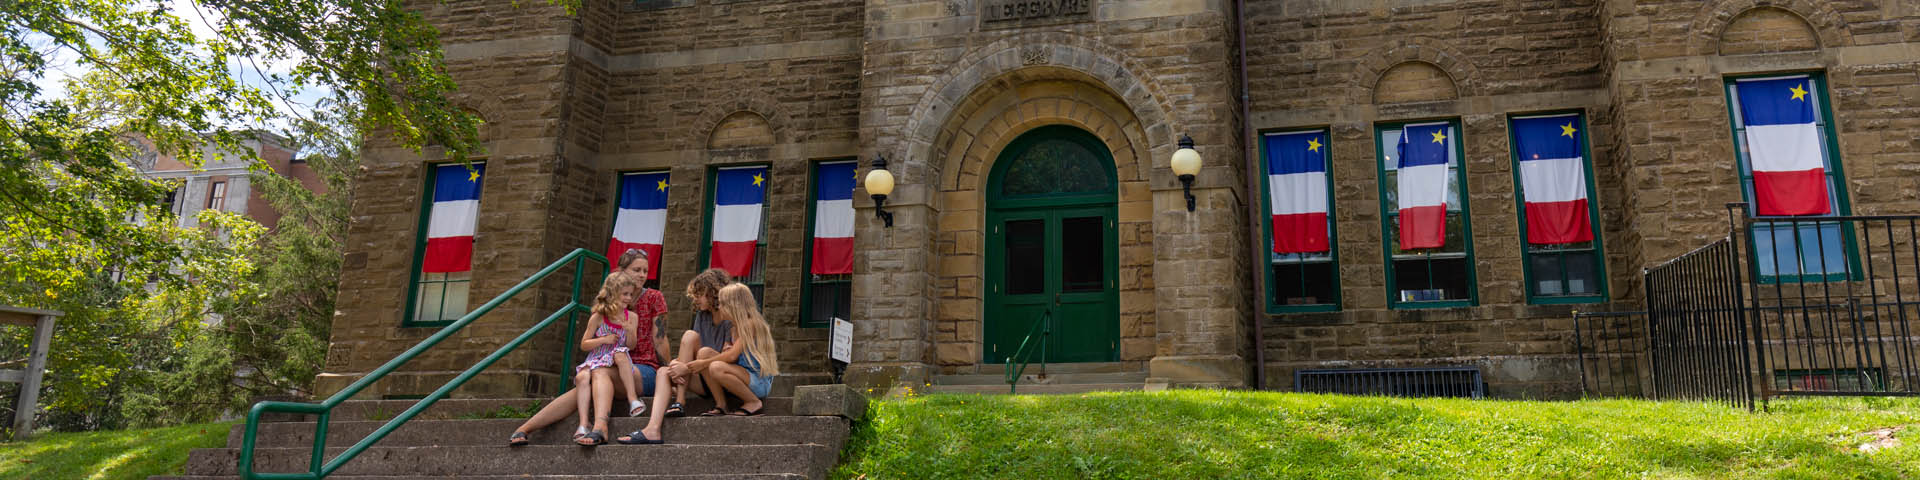 Une famille est assise sur le perron de l'édifice du Monument-Lefebvre. Des drapeaux acadiens sont accrochés aux fenêtres de l'édifice.